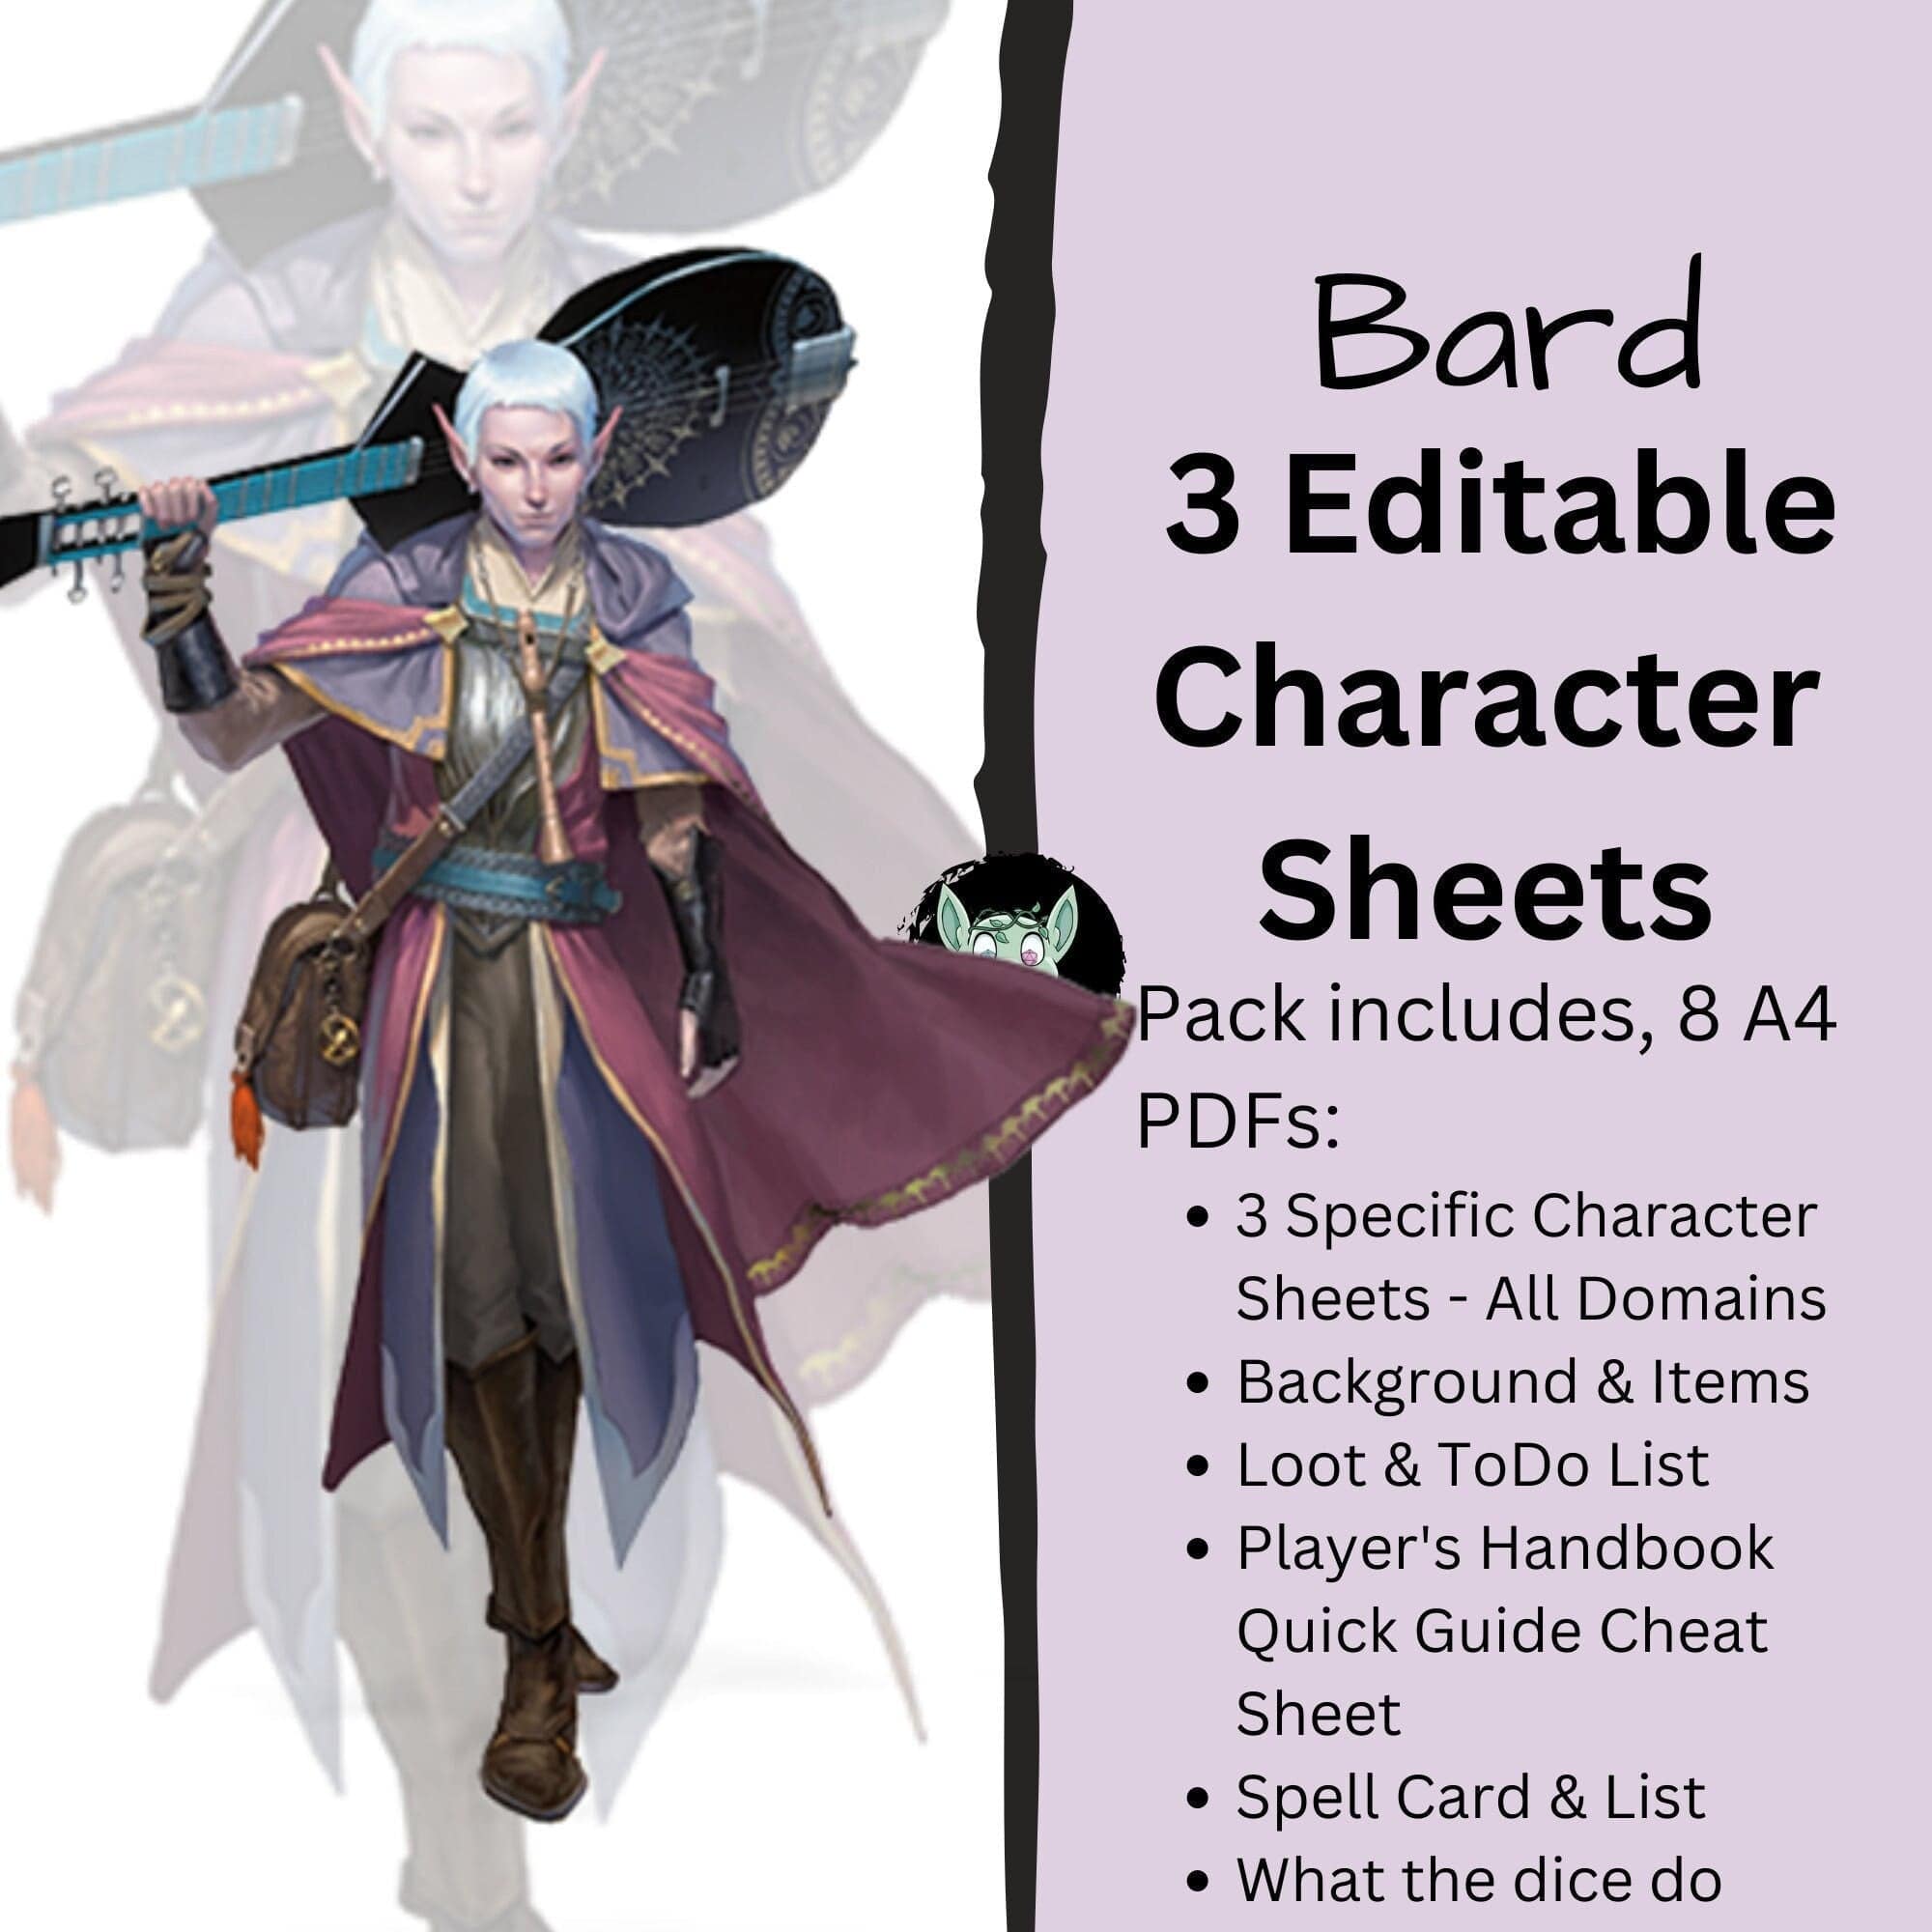 Bard DnD Character Sheet 5e 